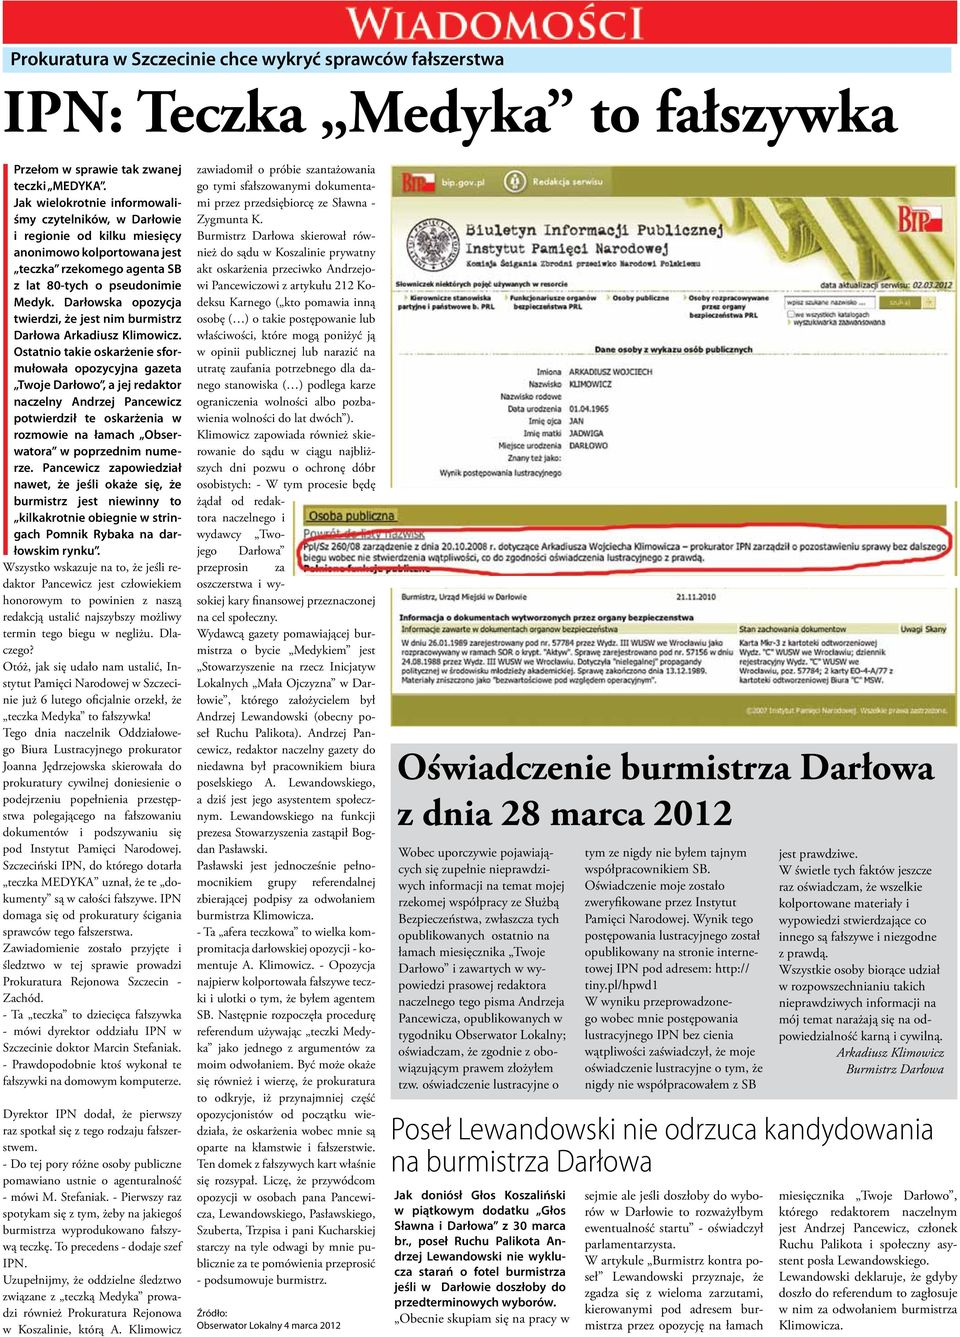 Darłowska opozycja twierdzi, że jest nim burmistrz Darłowa Arkadiusz Klimowicz.